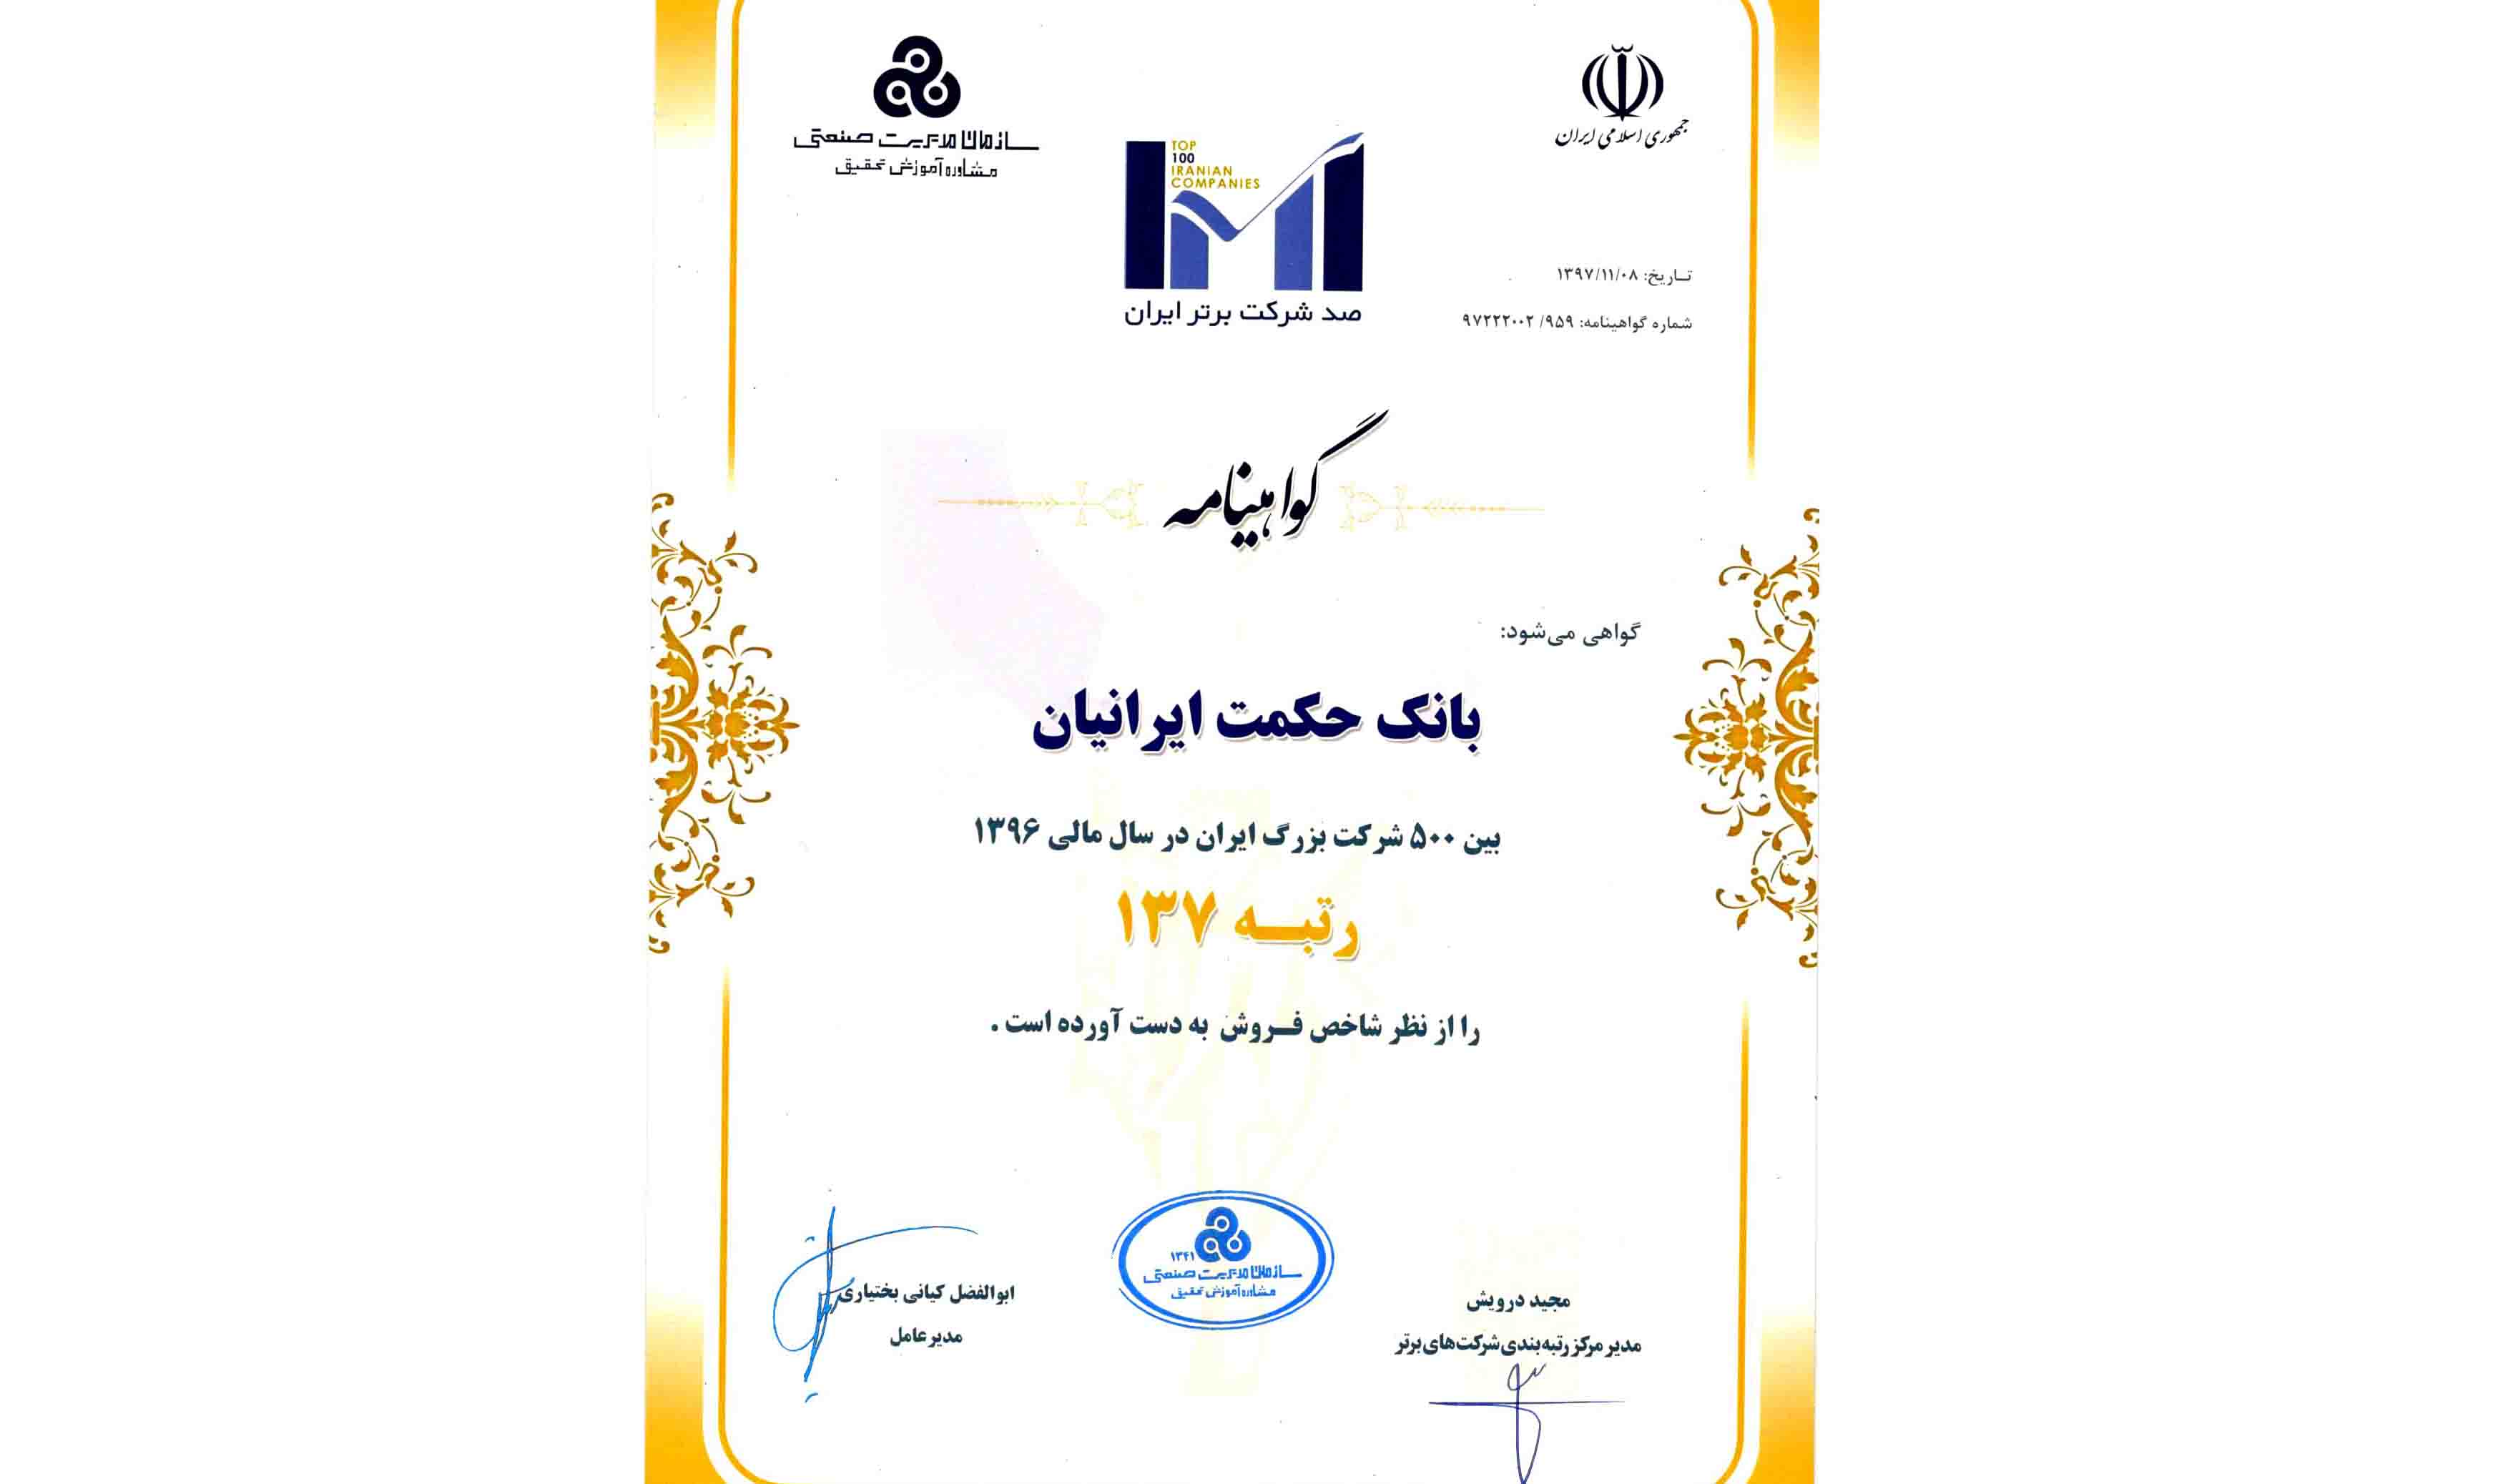 بانک حکمت ایرانیان رتبه 137 را از نظر شاخص فروش کسب کرد